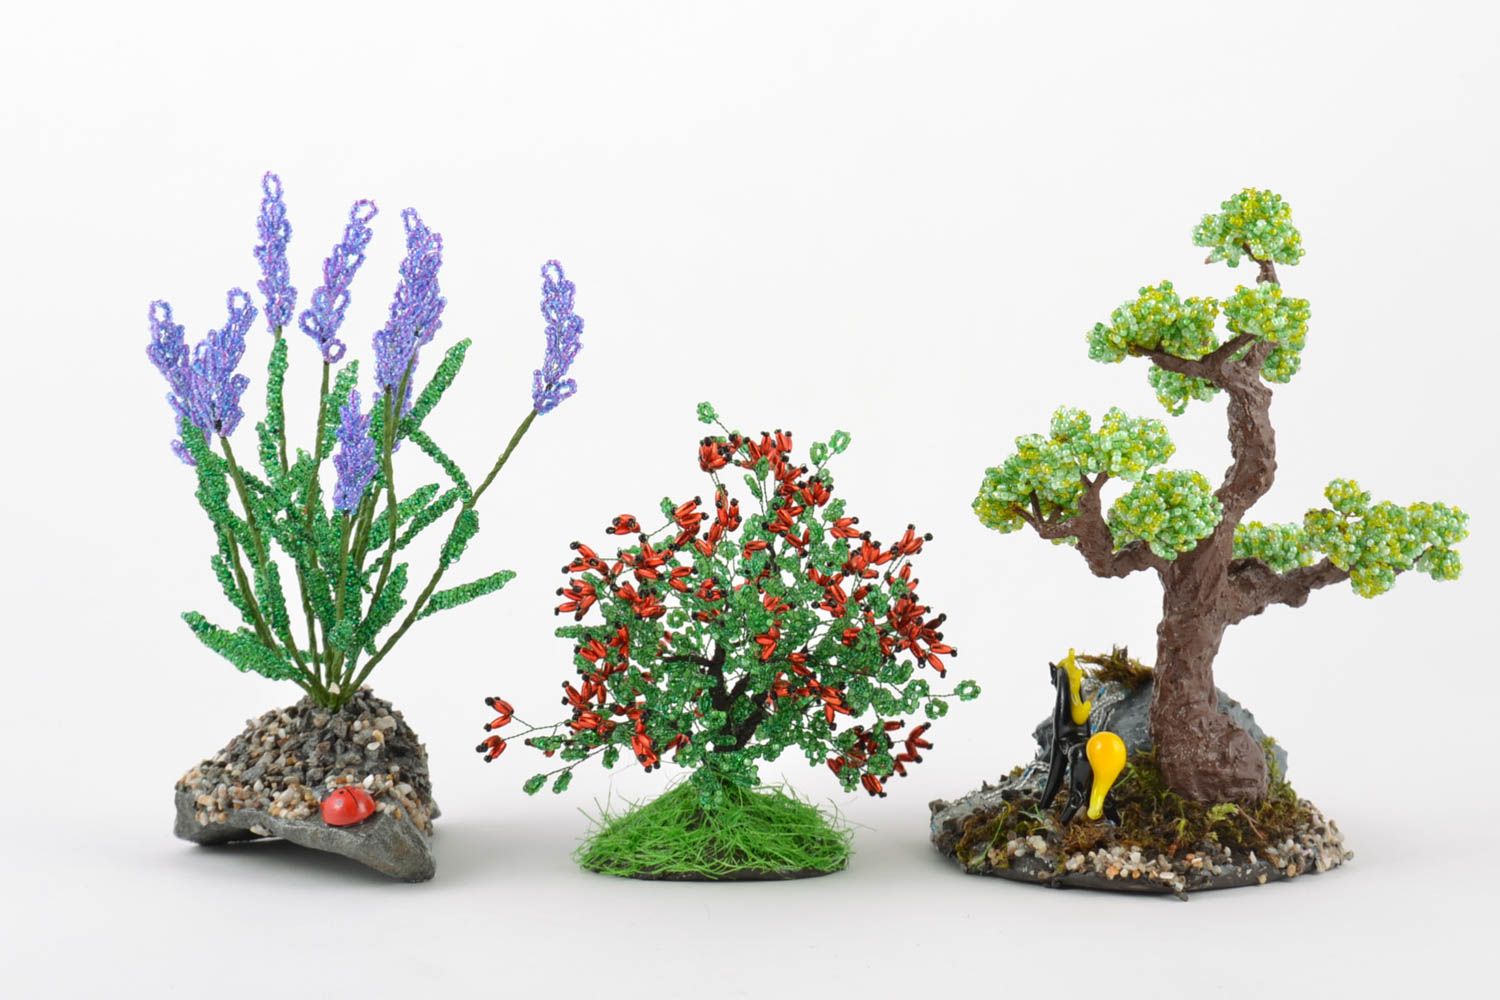 Цветы кустик и дерево из бисера набор из 3 изделий ручной работы для декора дома фото 2